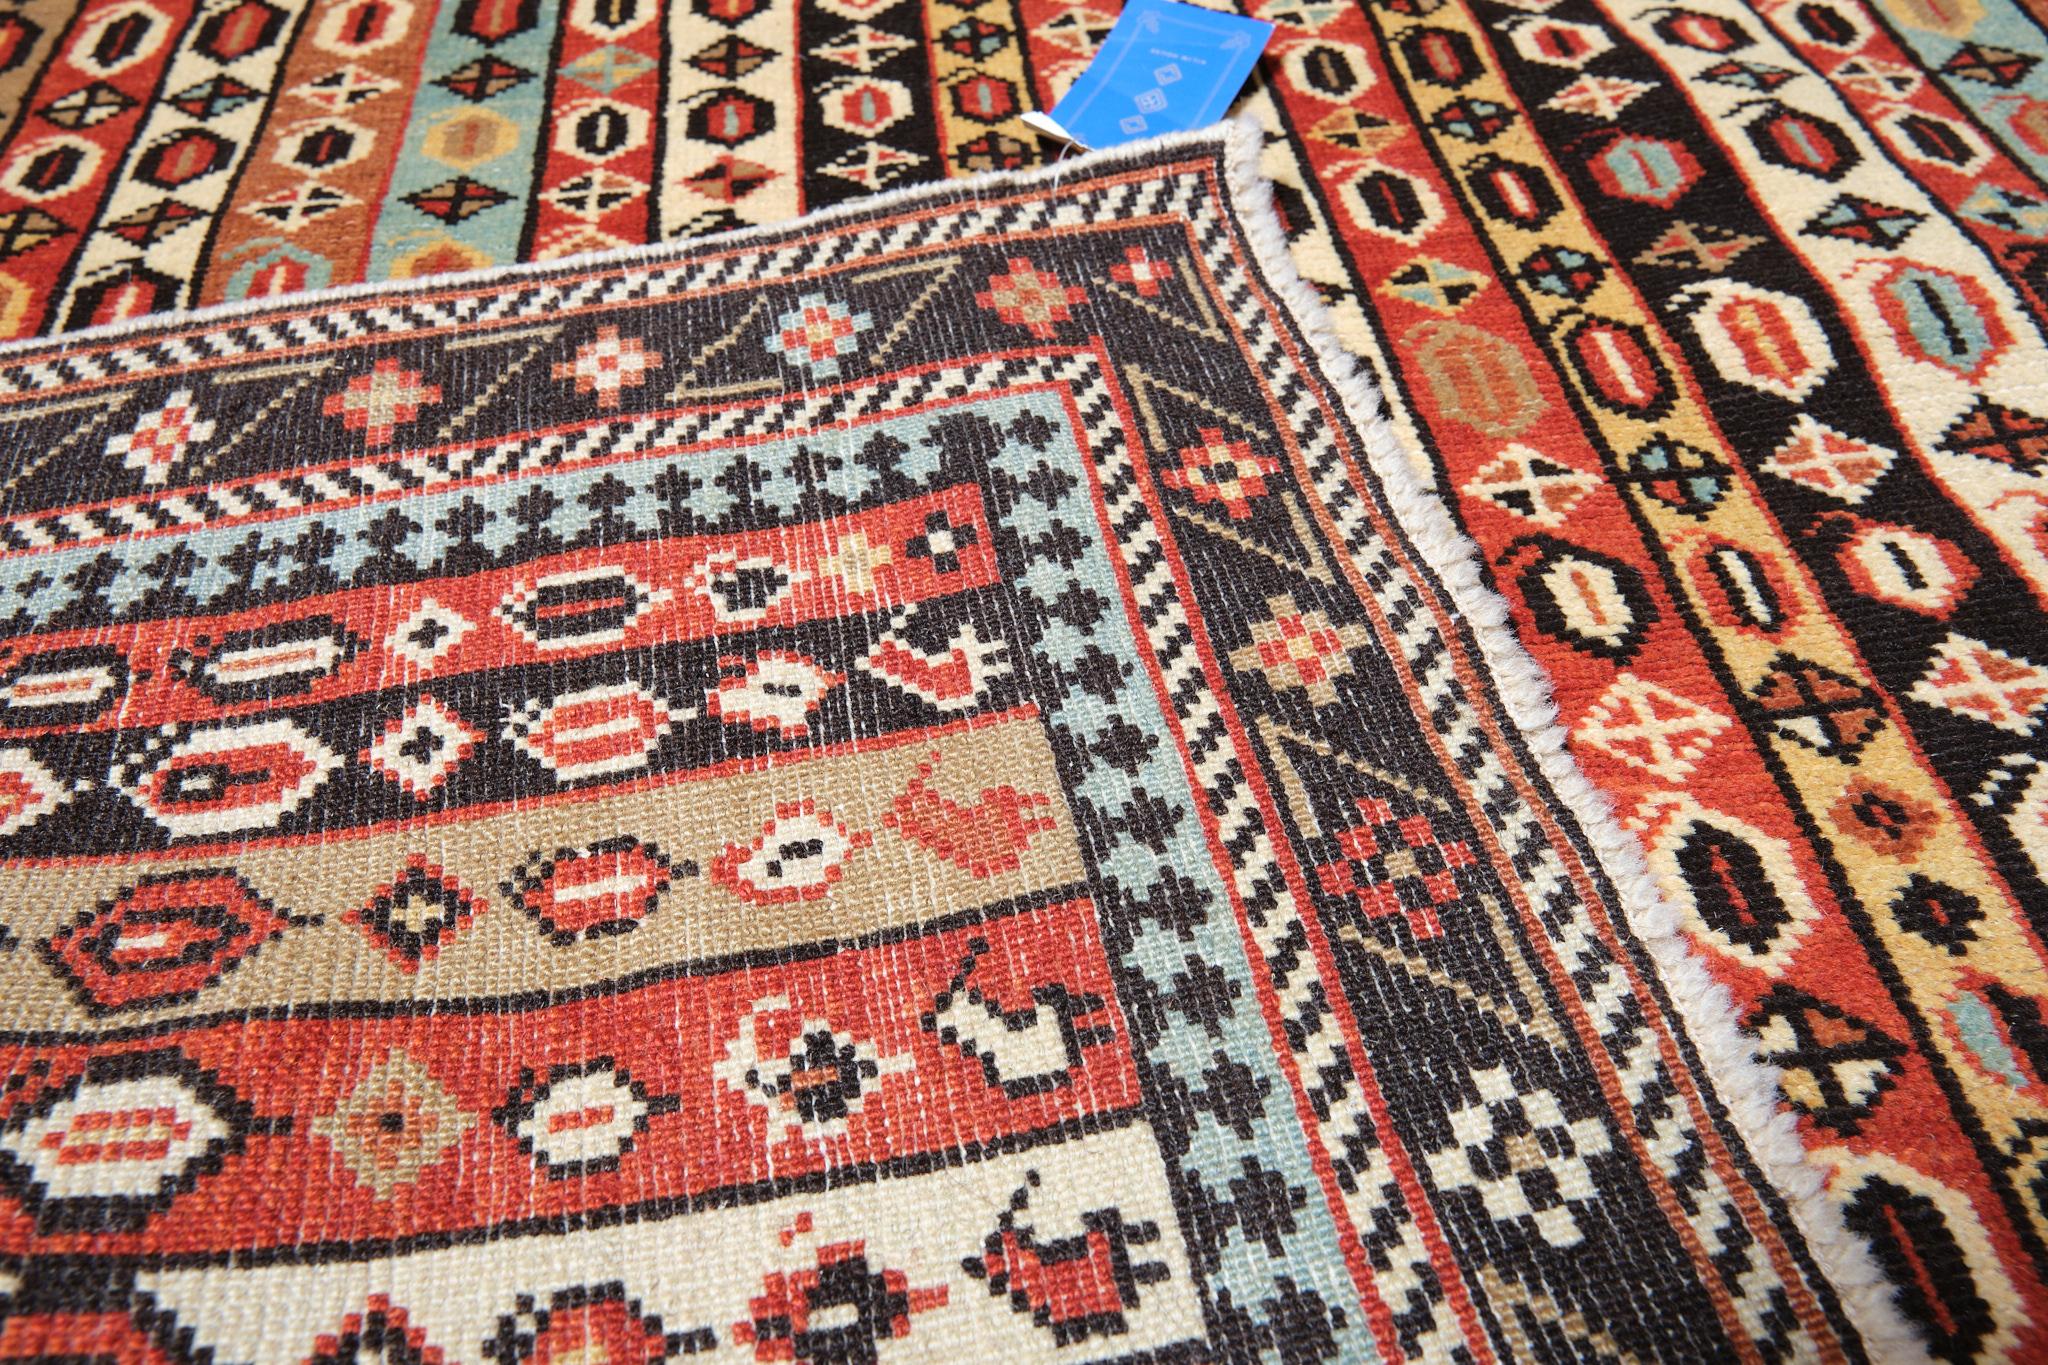 Turkish Ararat Rugs Karabagh Prayer Rug with Vertical Stripes Revival Carpet Natural Dye For Sale